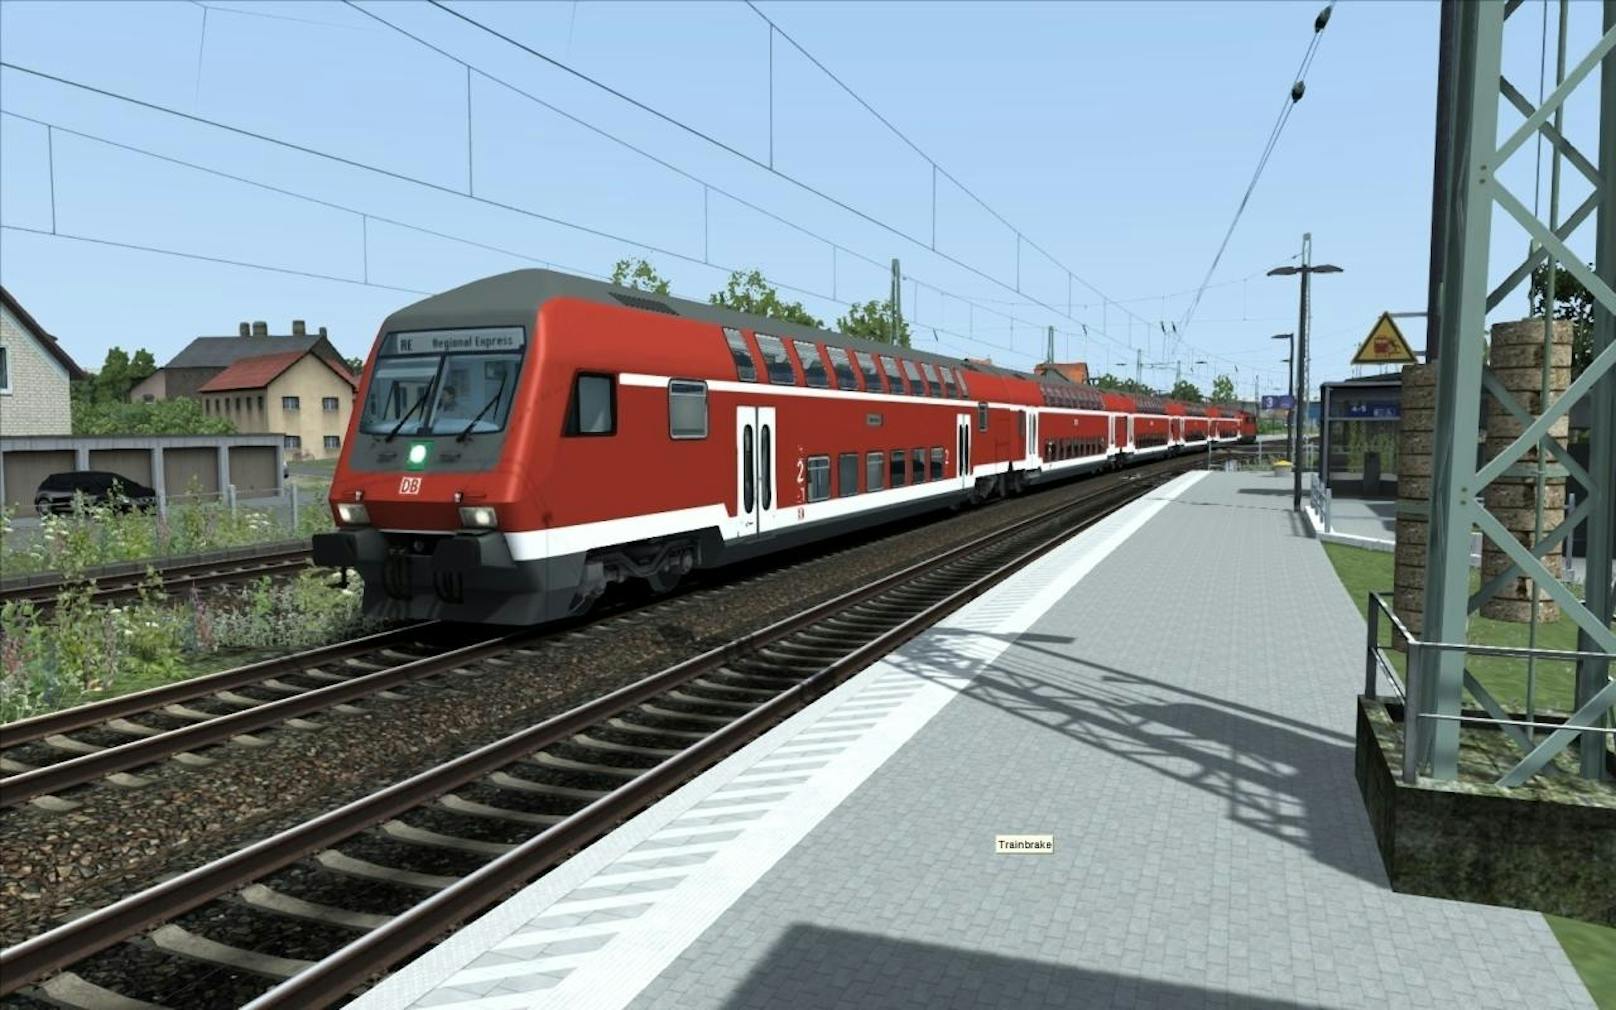 Mit dem neuen Add-On Freiburg - Basel von Aerosoft ist eine der wichtigsten Strecken Deutschlands ab sofort für den Train Simulator 2018 erhältlich. Die Erweiterung bietet neue Szenarien für den Karriere-Modus sowie weitgehend originalgetreue Bahnhöfe und Haltestellen. Gleisverläufe, Kurvenüberhöhung, Fahrleitungen und HV-Signalsysteme wurden realitätsgetreu im Spiel umgesetzt.